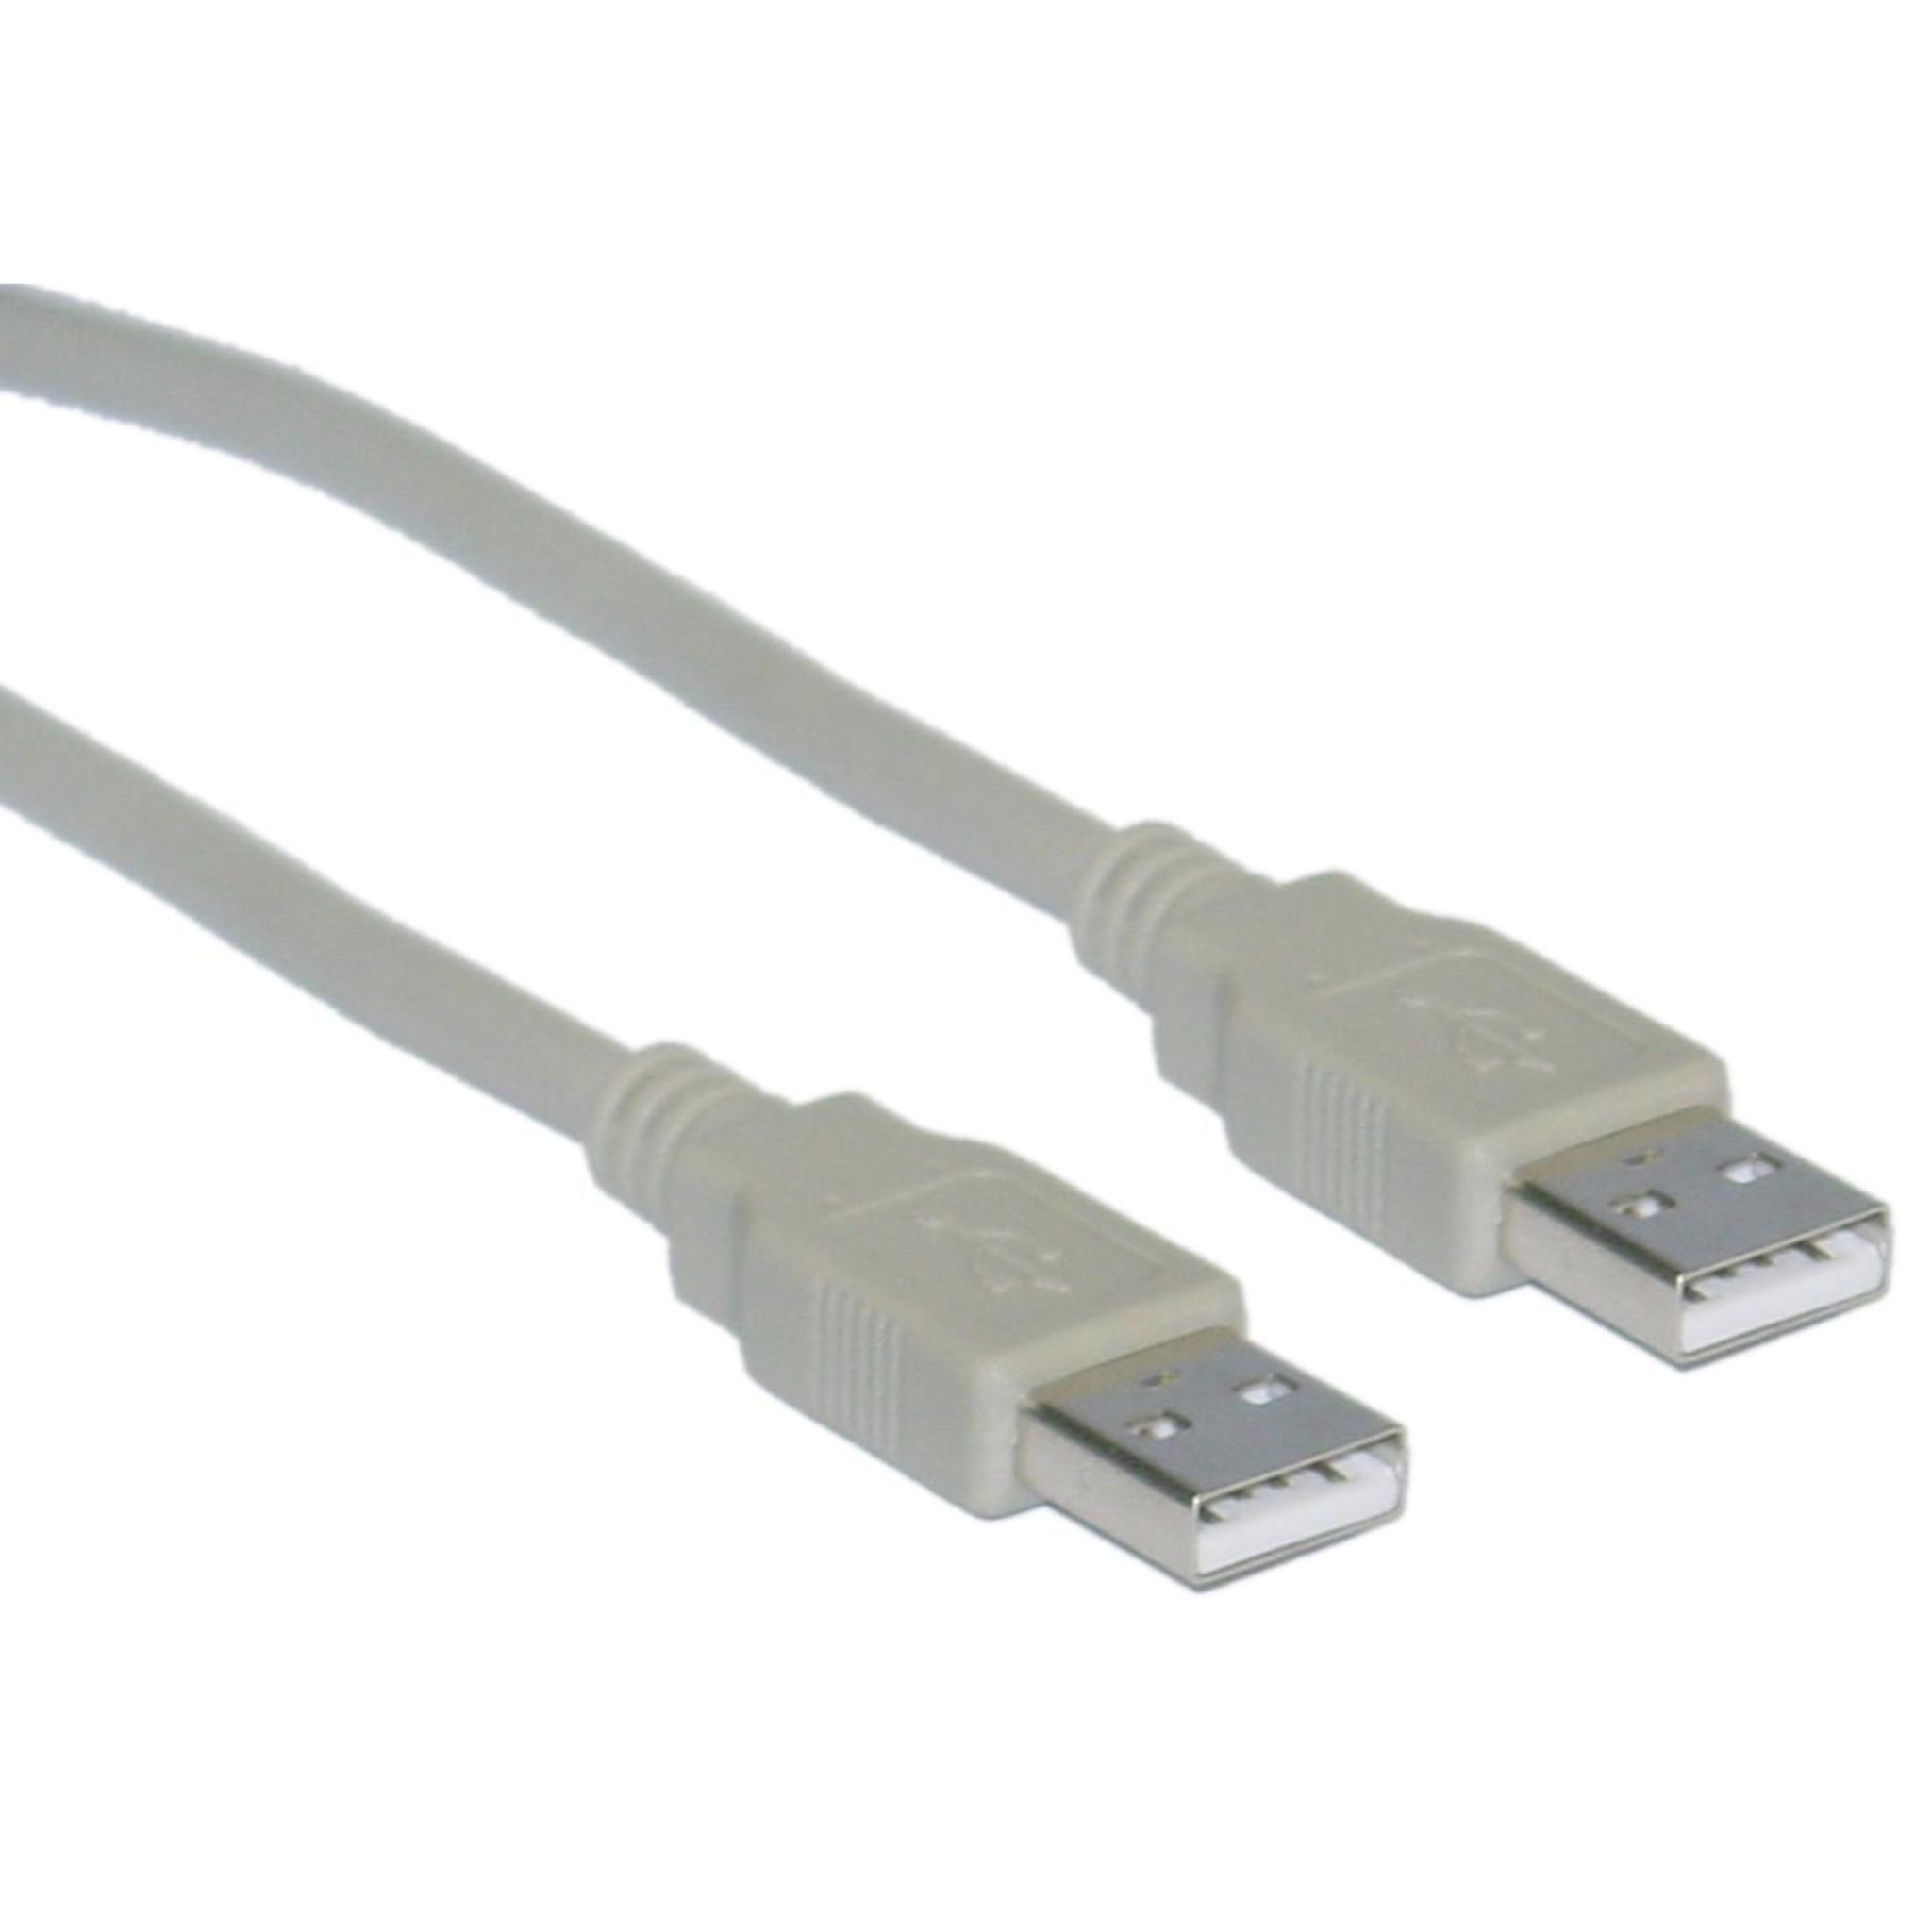 QILIVE Connectique Câble USB A Mâle / A Mâle Gris pas cher 